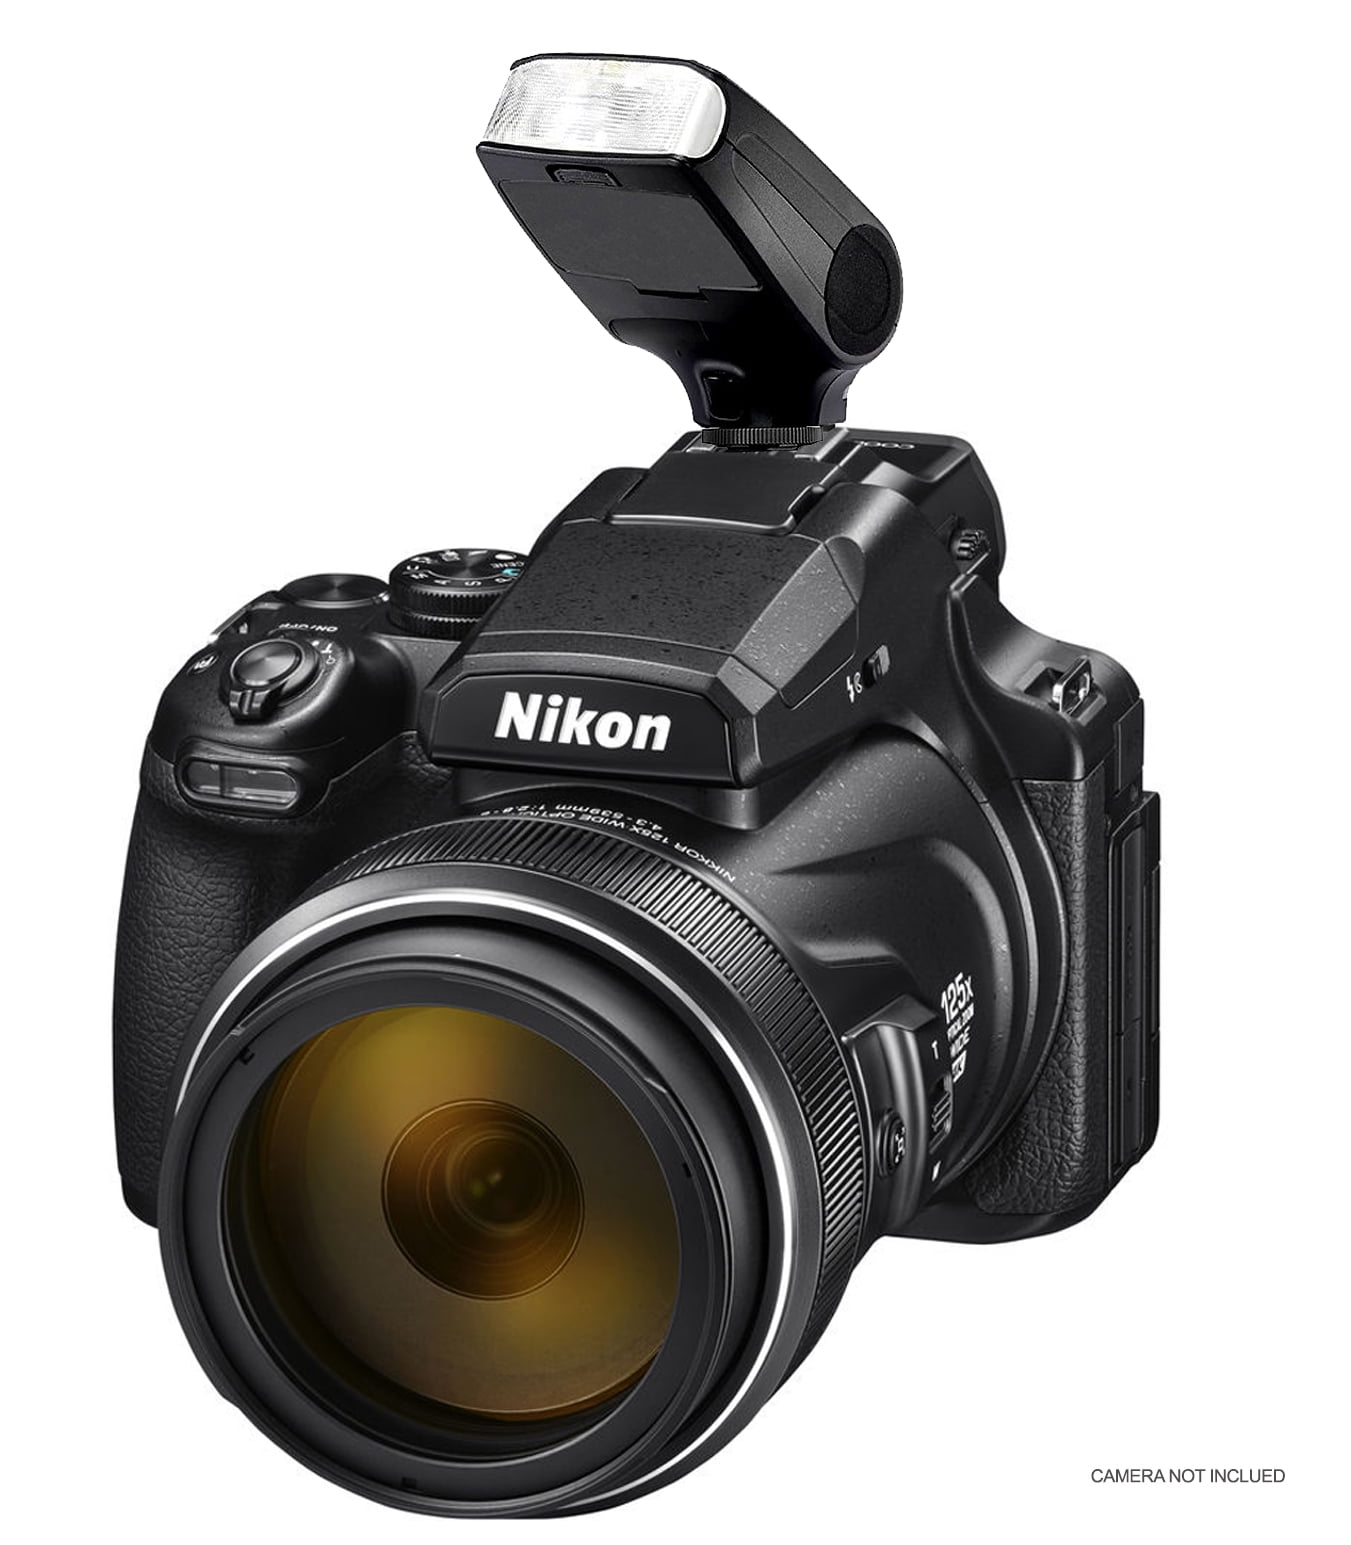 Nikon COOLPIX P1000 Digital Camera w/ Professional Flash, 16GB MC, Tripod